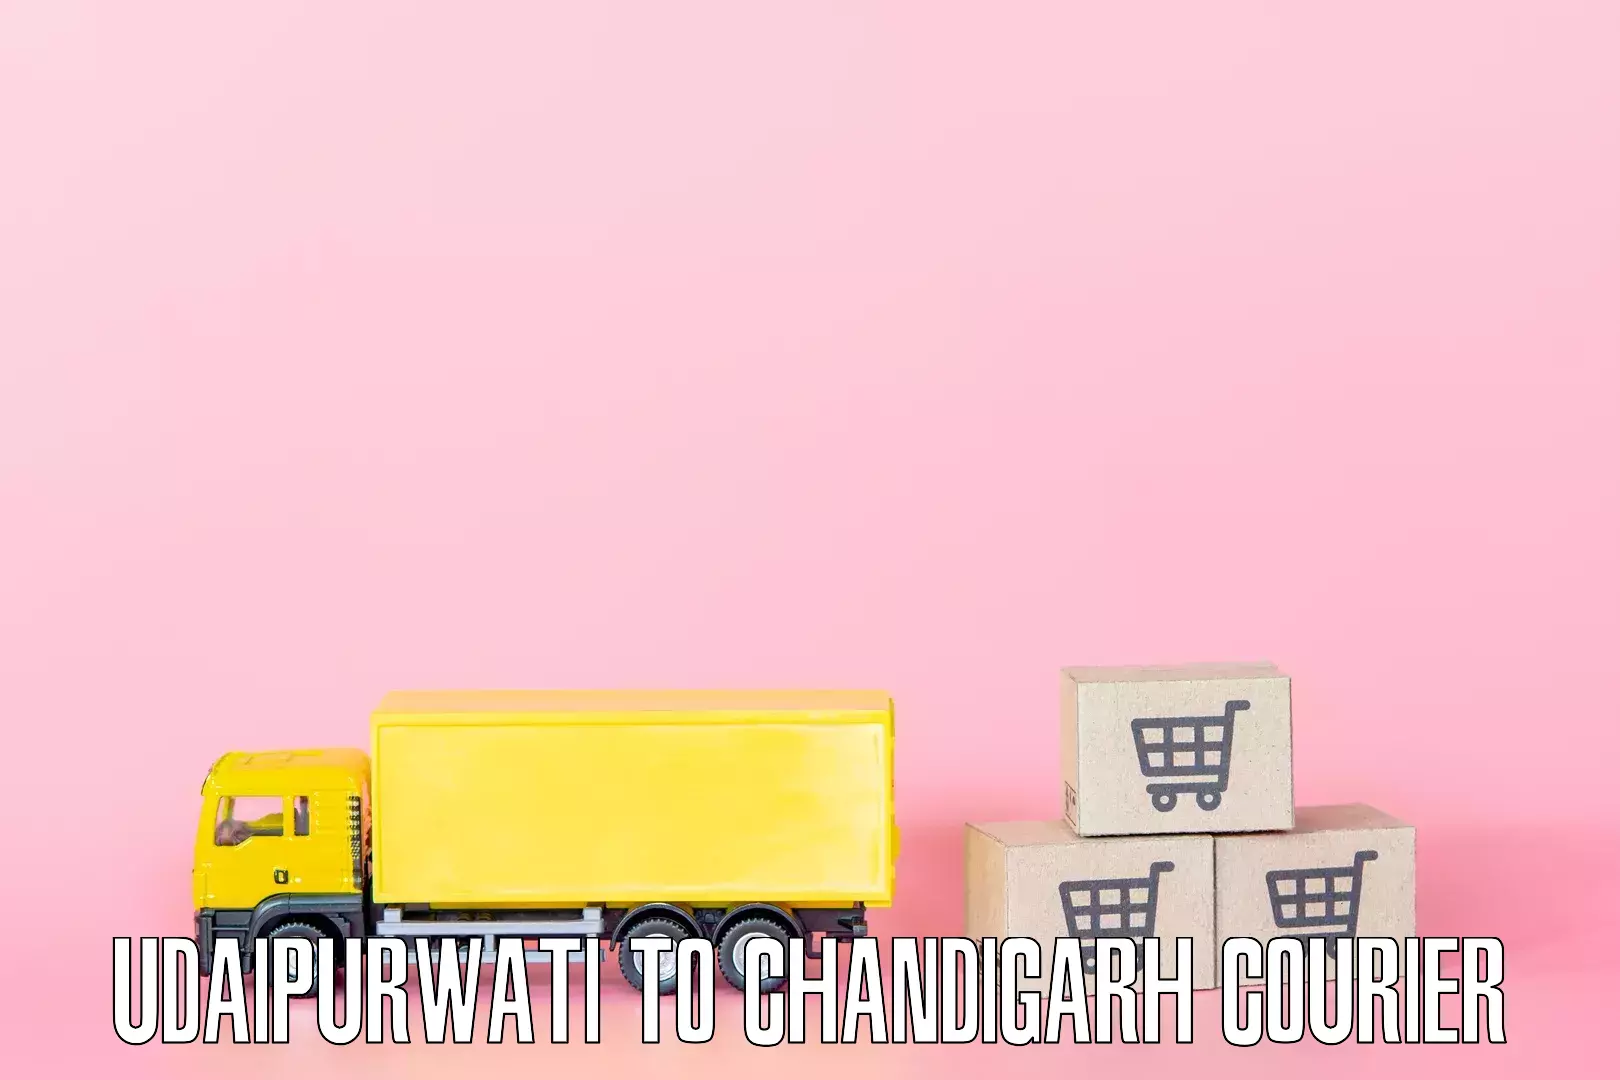 Furniture transport specialists Udaipurwati to Chandigarh